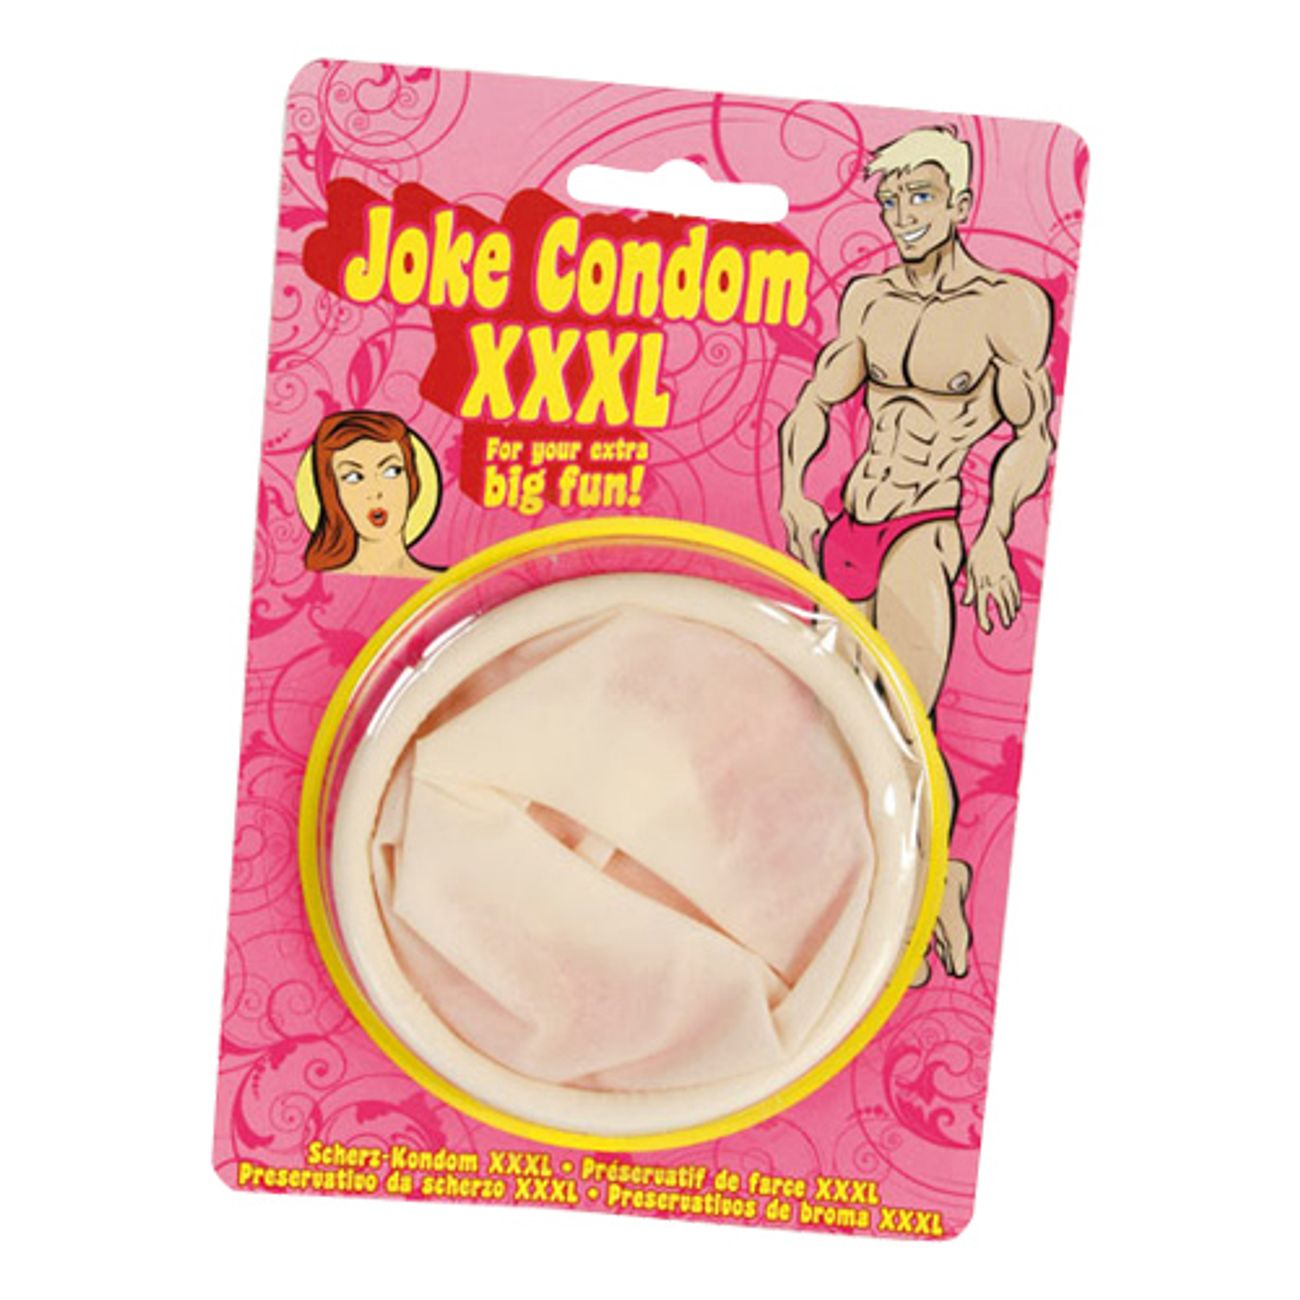 xxxl-kondom-1